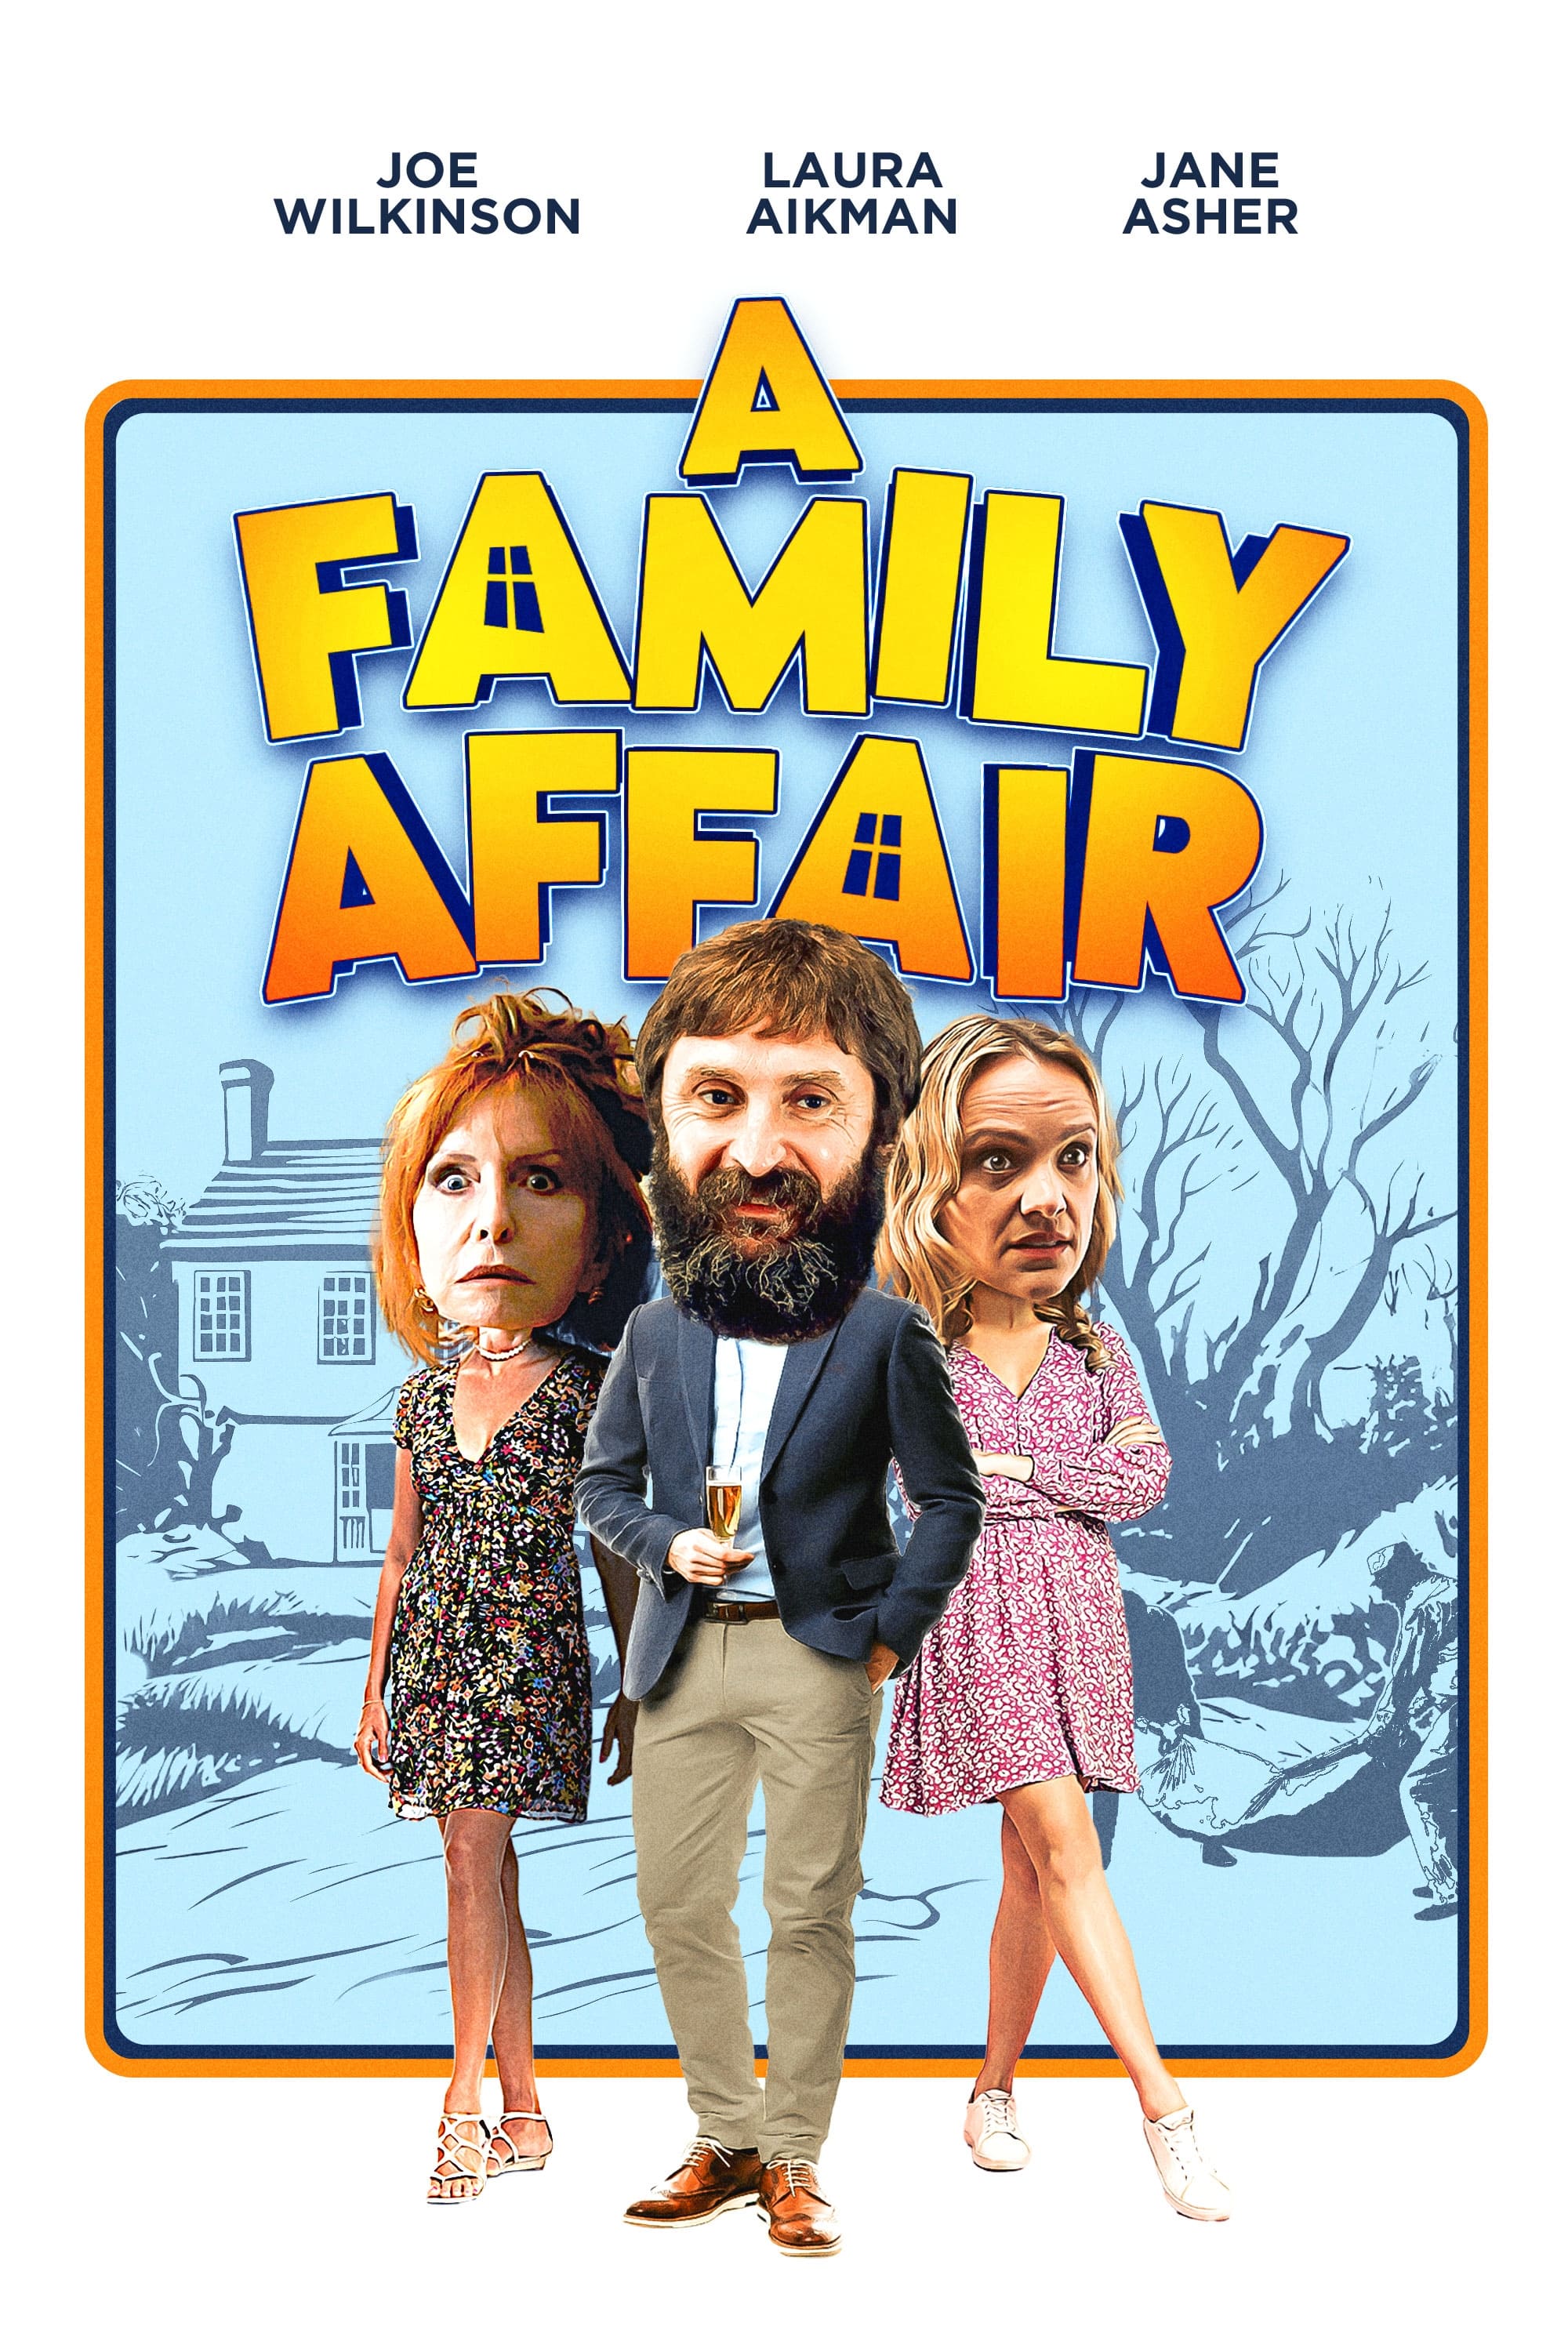 A Family Affair film